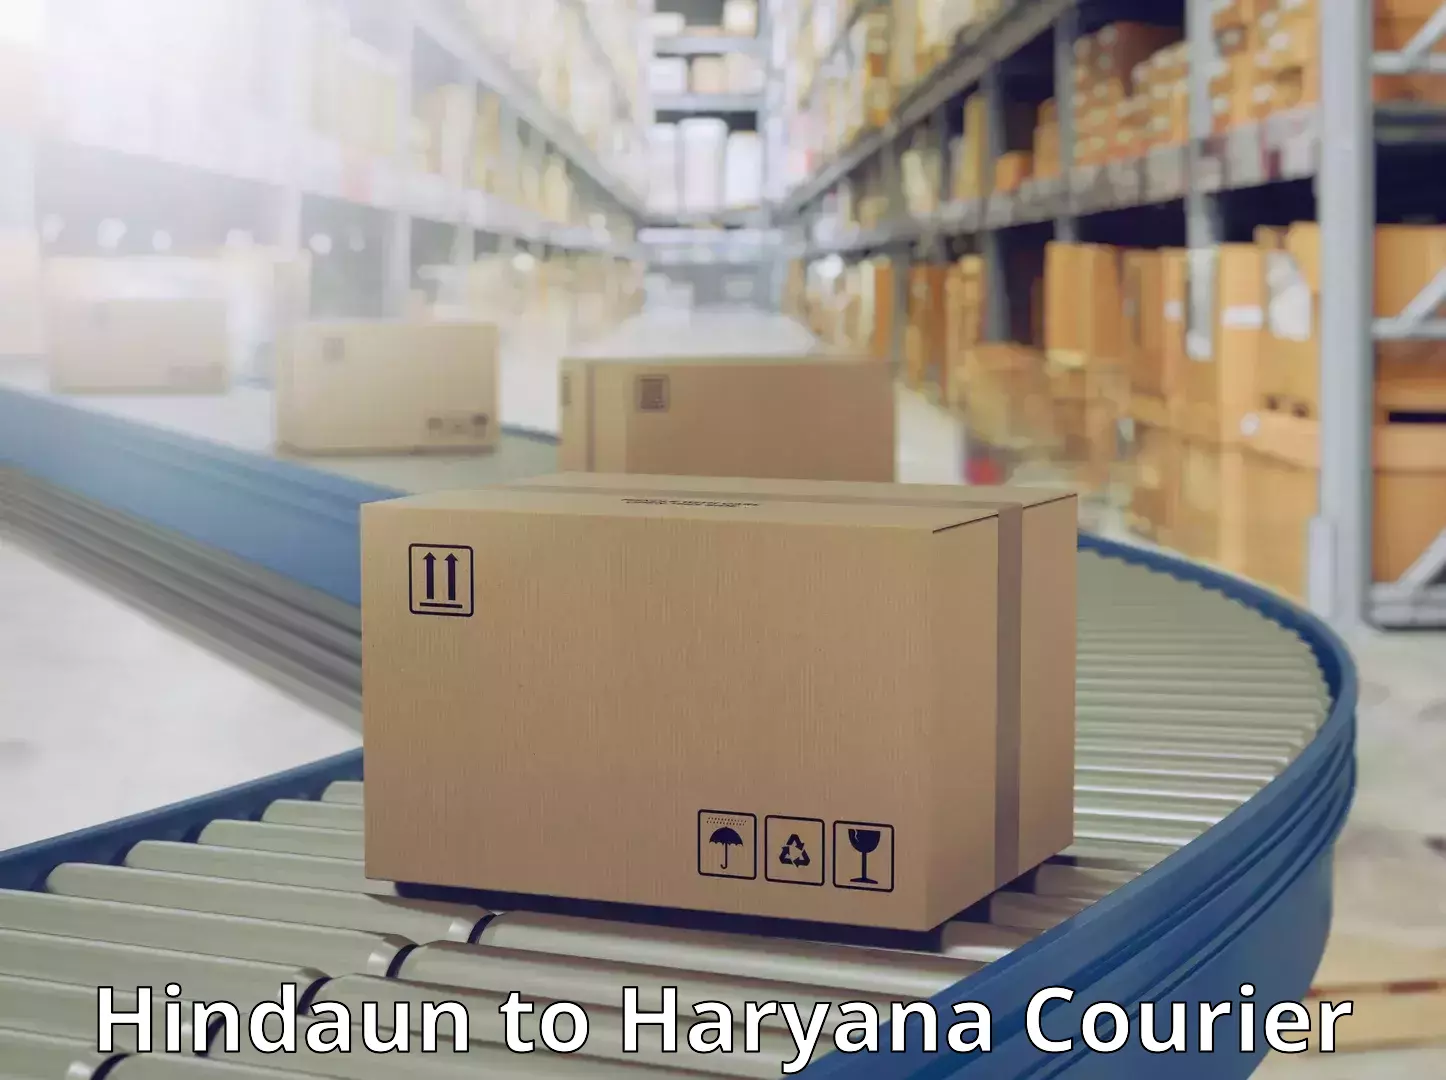 Express logistics providers Hindaun to Haryana